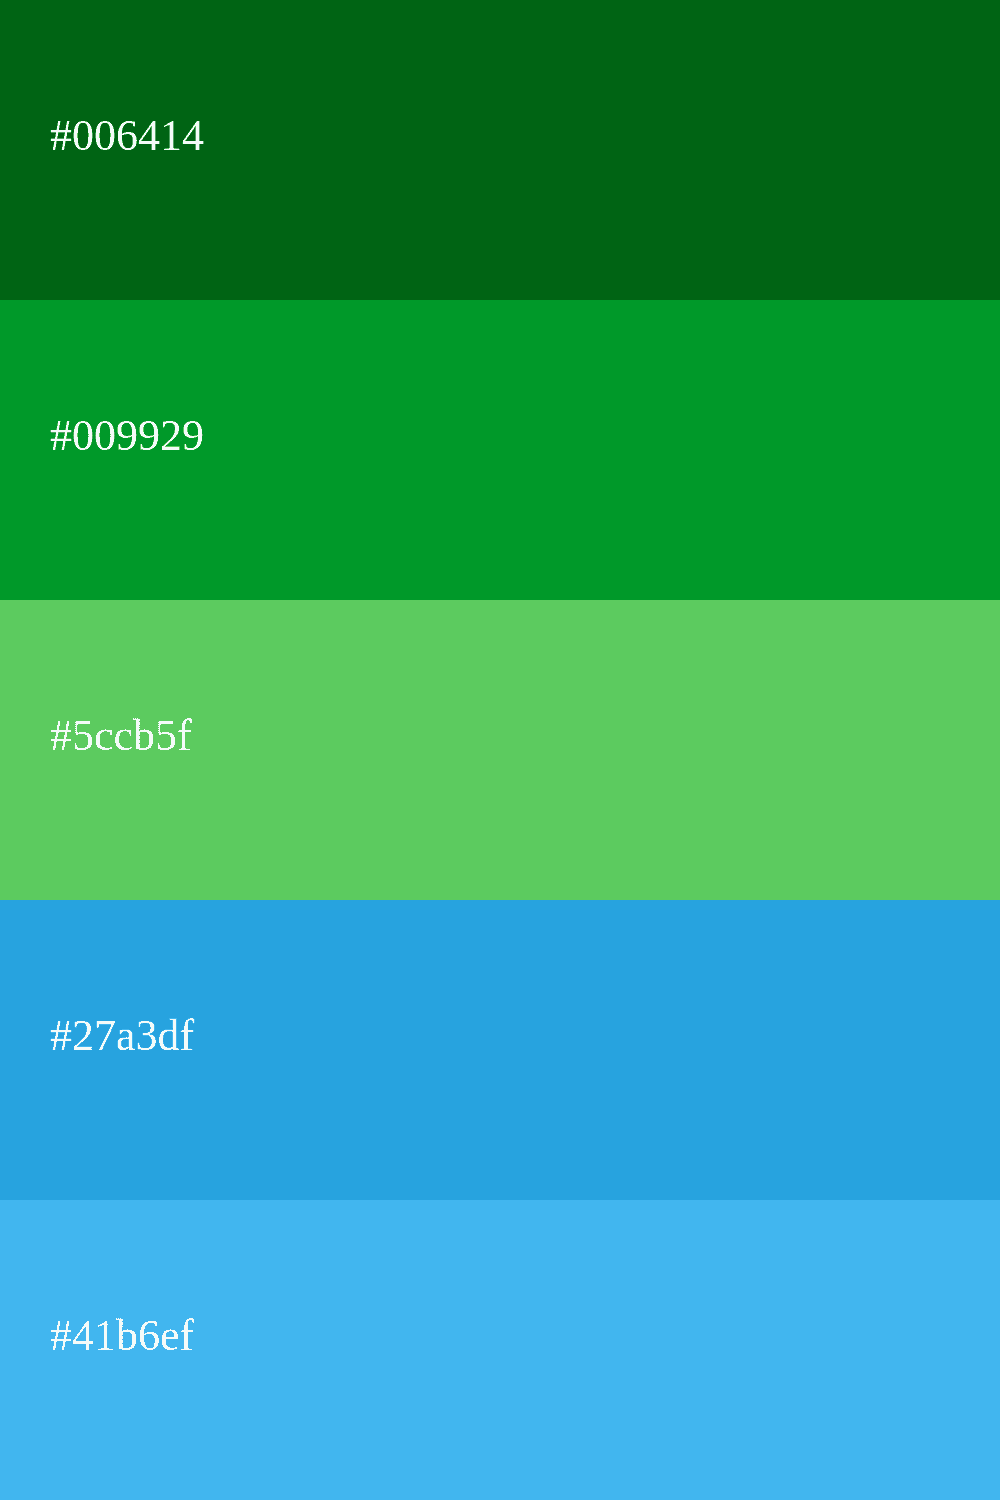 cor verde e azul